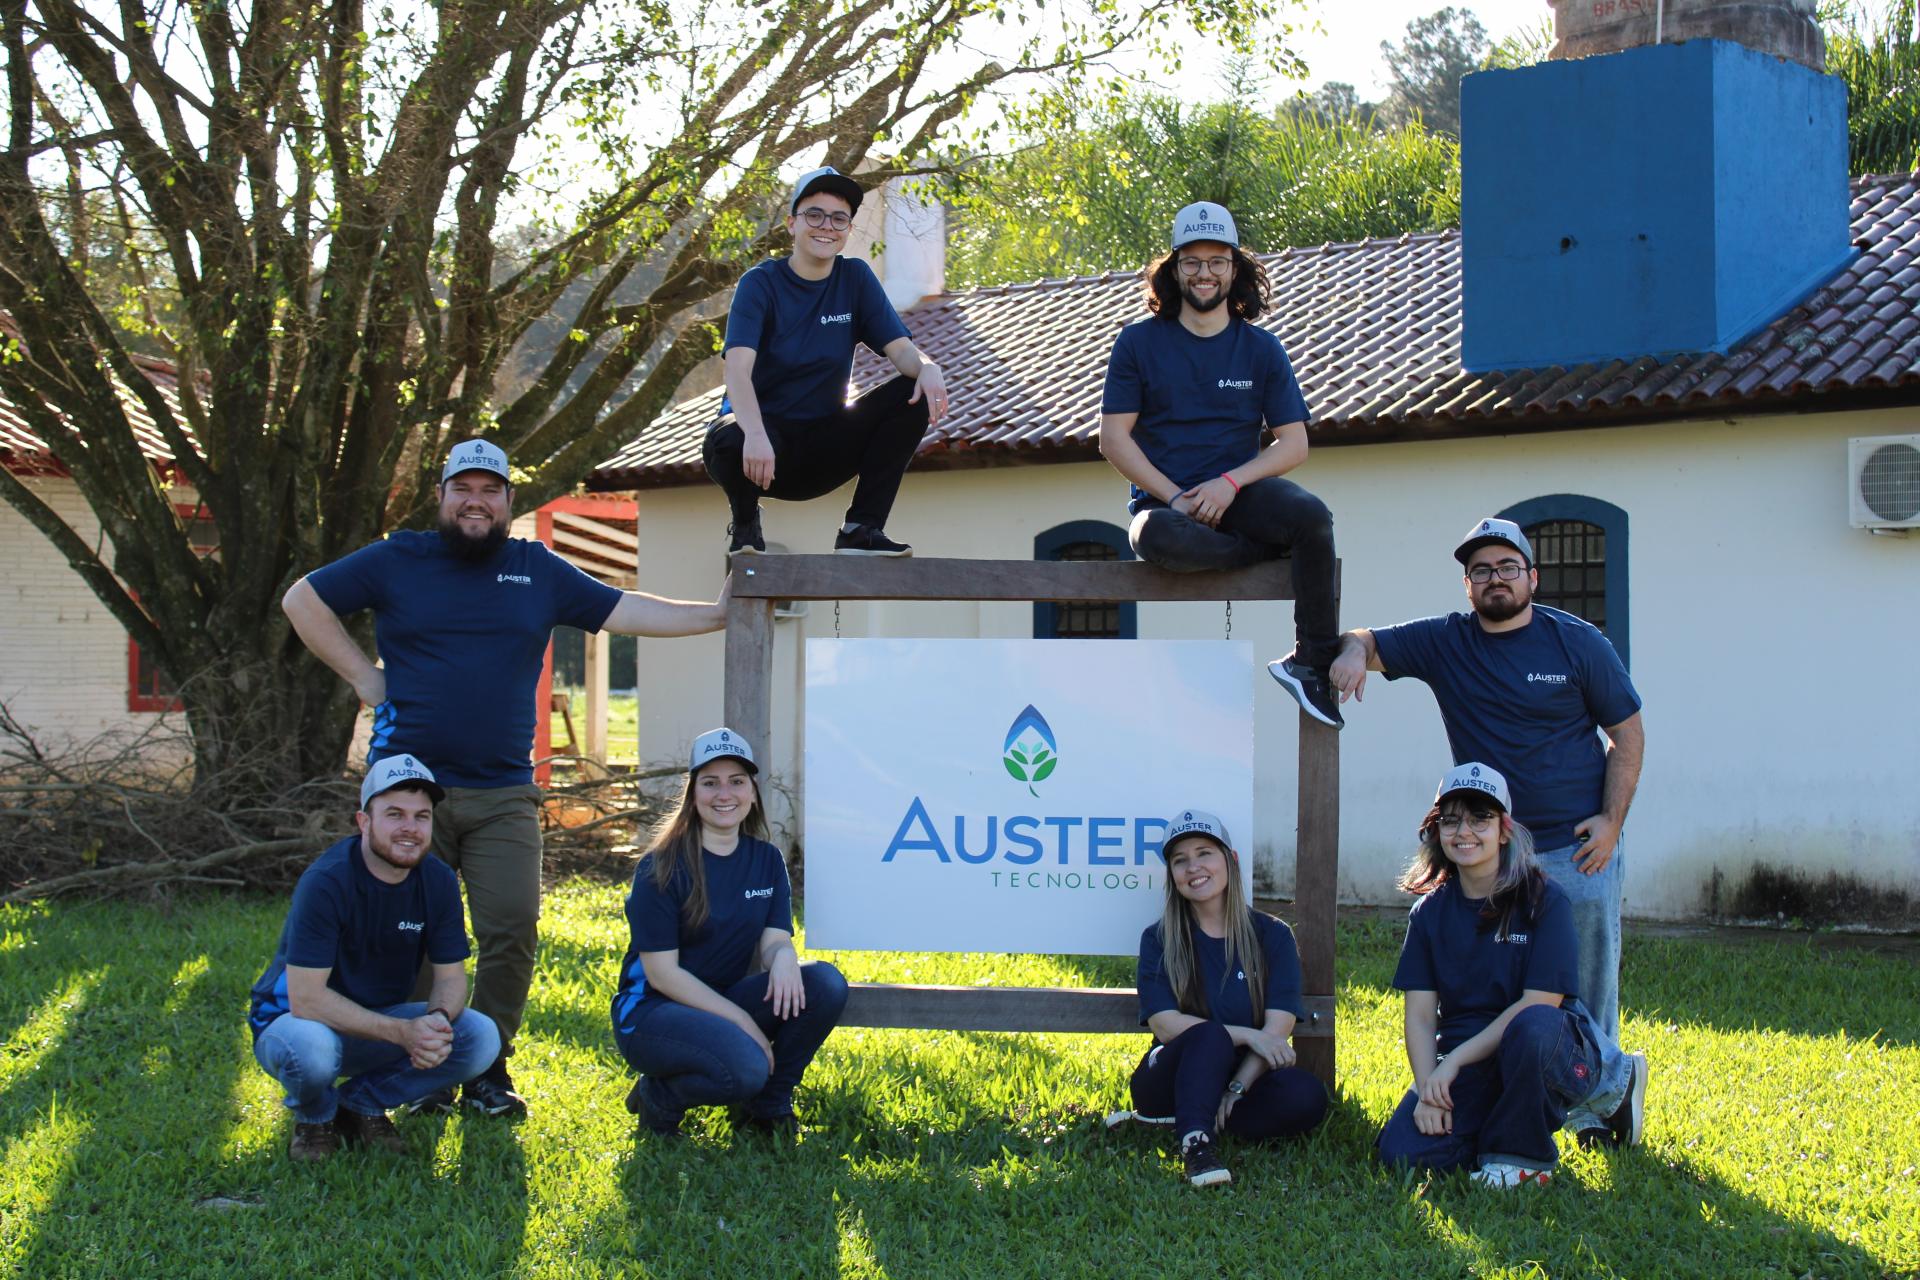 foto horizontal colorida mostra oito jovens, homens e mulheres, com camisetas azul marinho, ao redor de uma placa da Auster instalada em um gramado